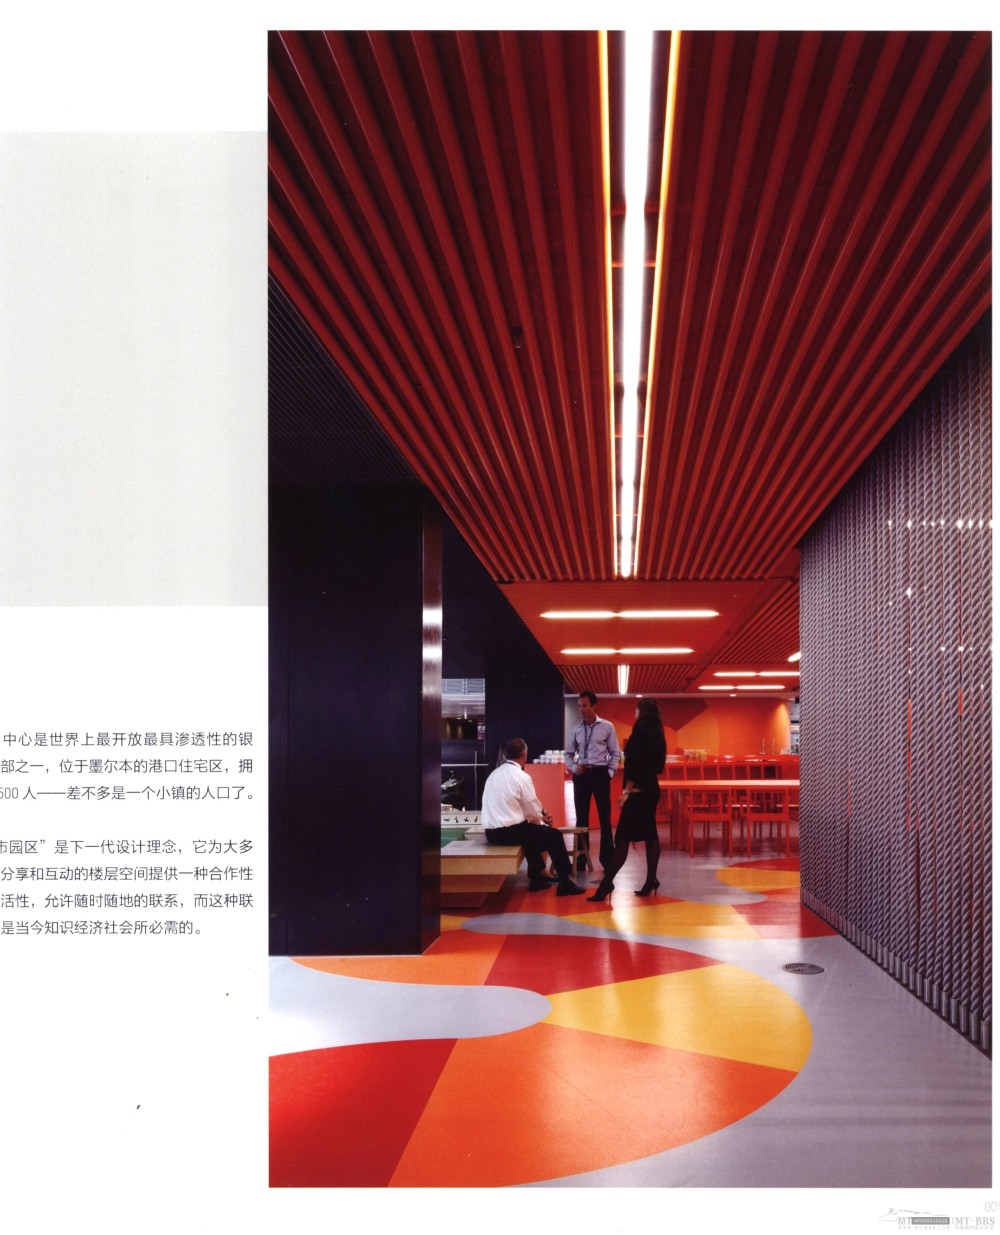 2 第十八届亚太区室内设计大奖参赛作品选——办公空间_科比 0006.jpg